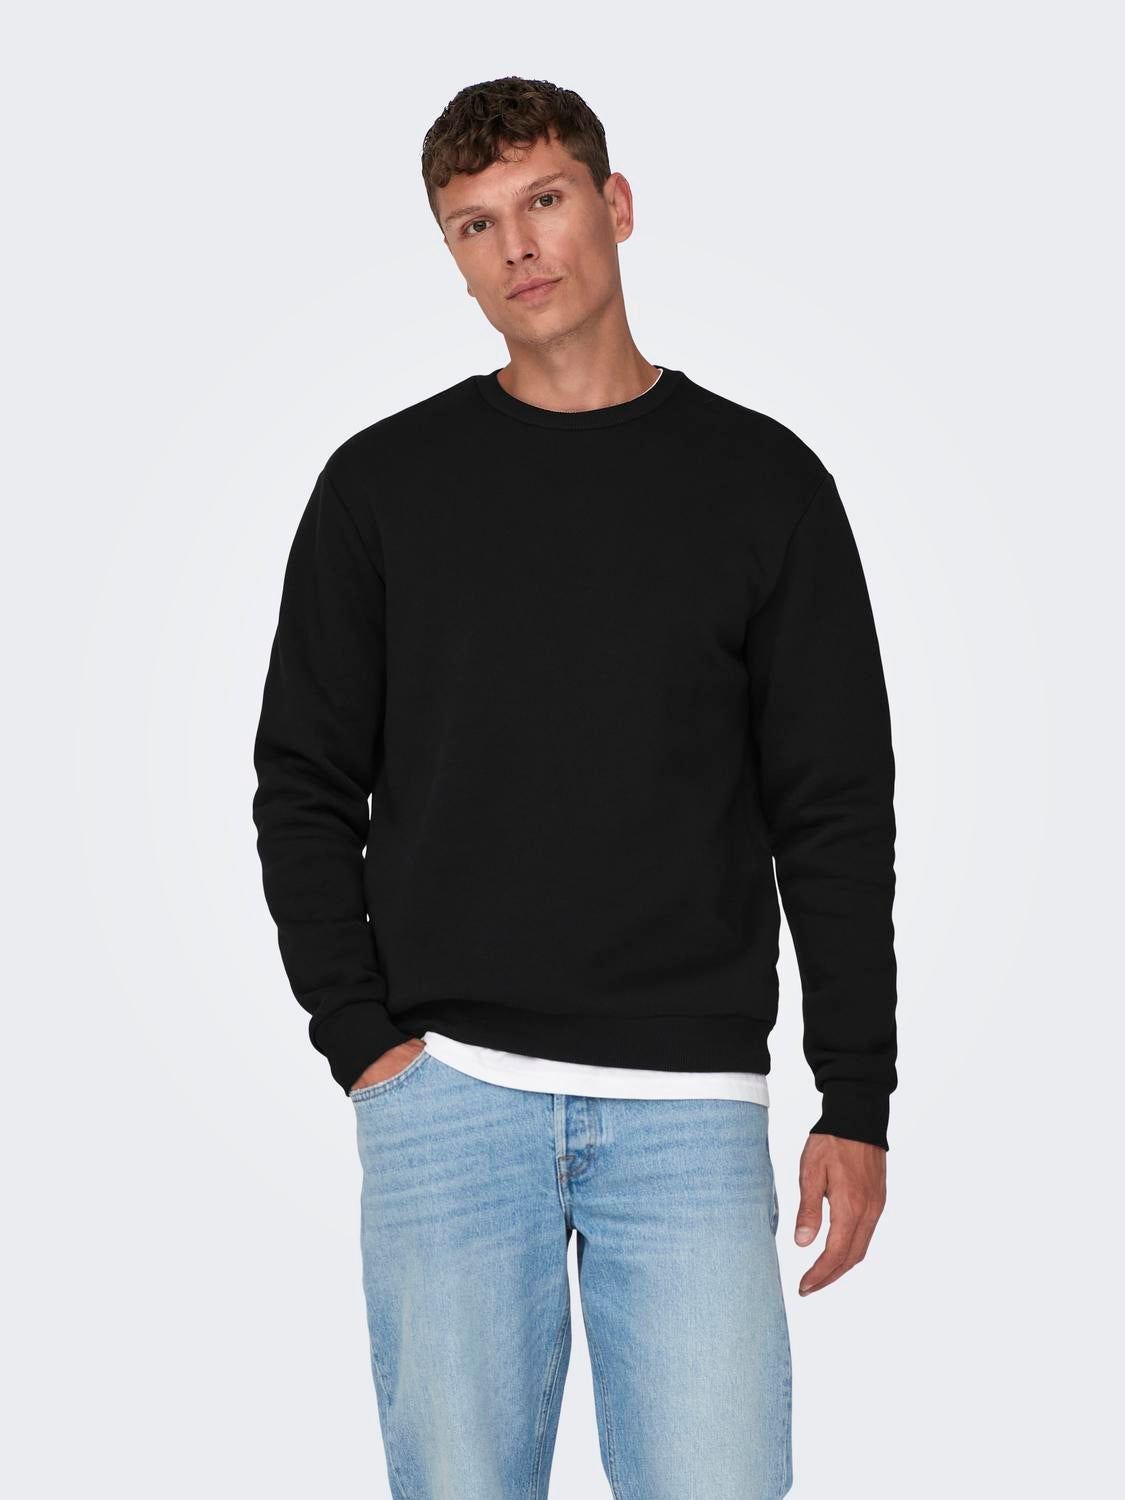 Regular Fit Round Neck Sweatshirt | Black | ONLY & SONS®